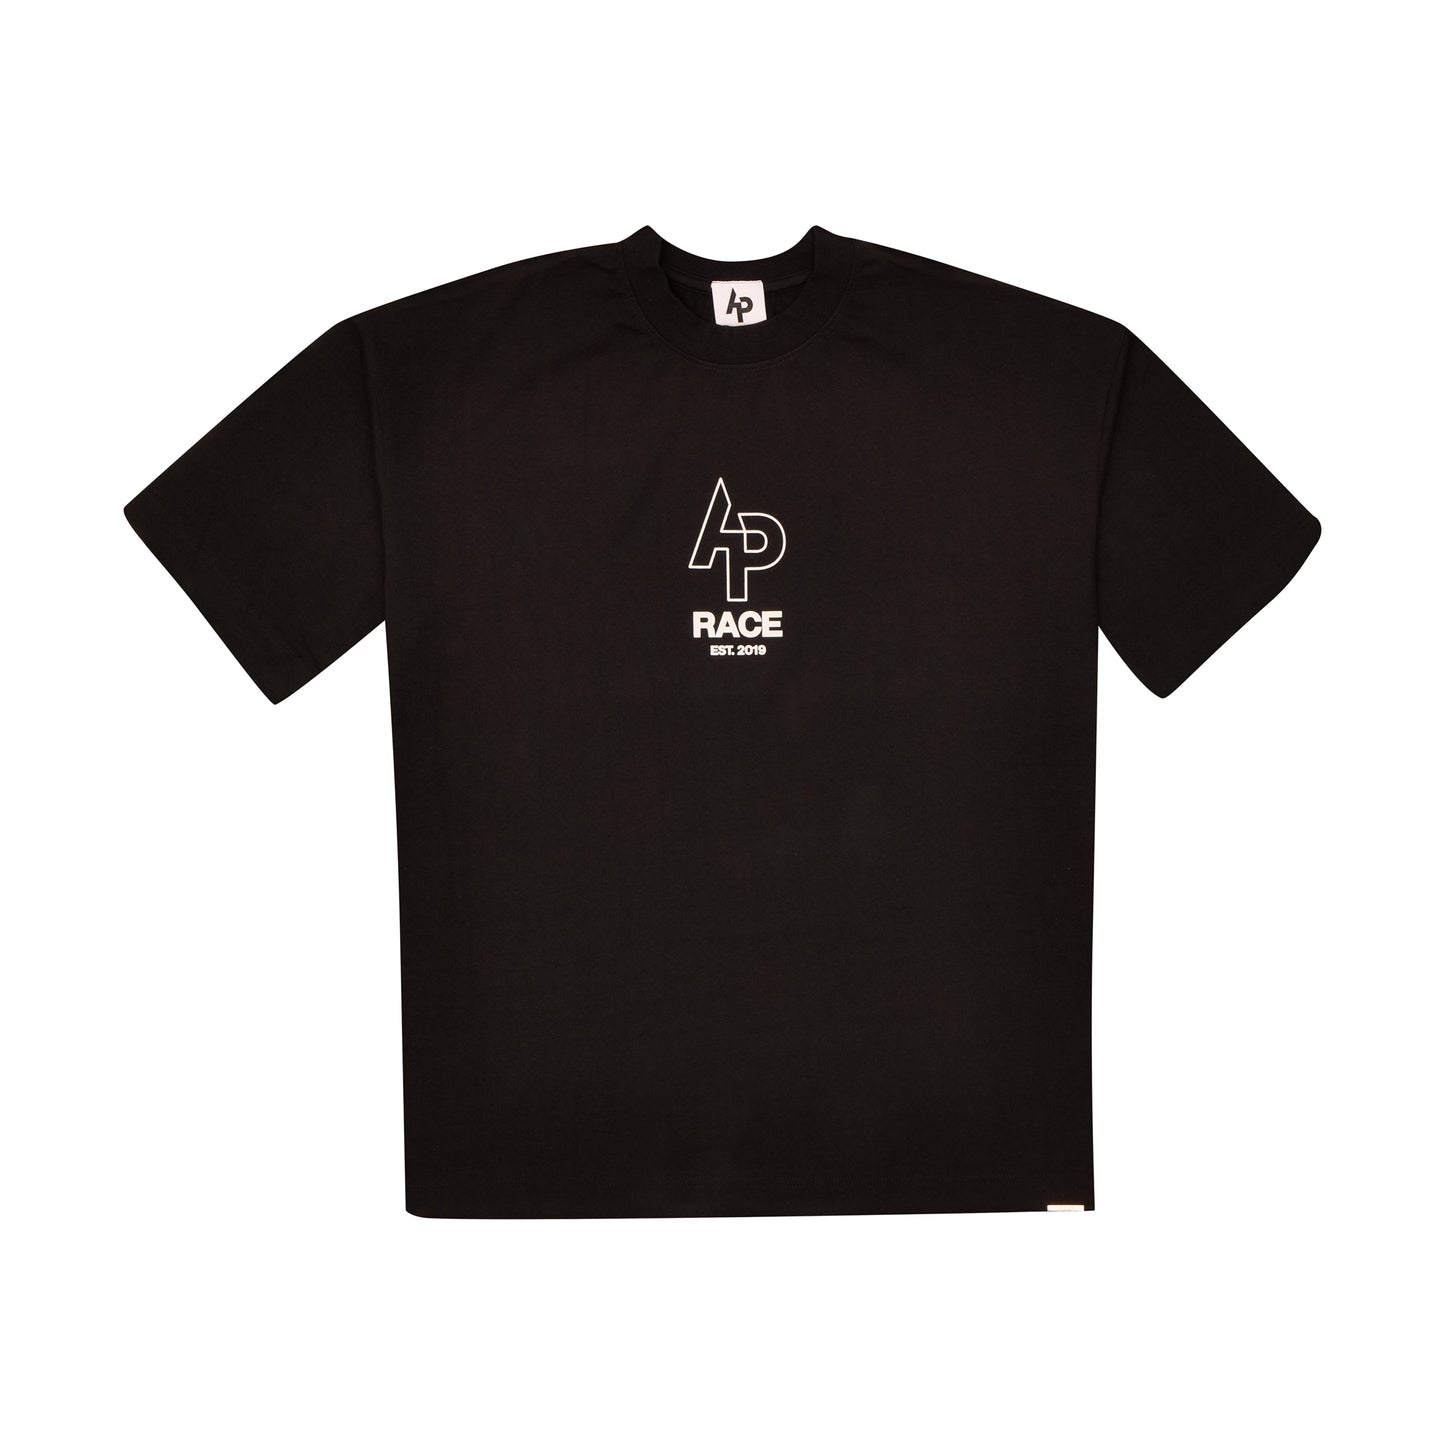 AP Gold Shark T-shirt